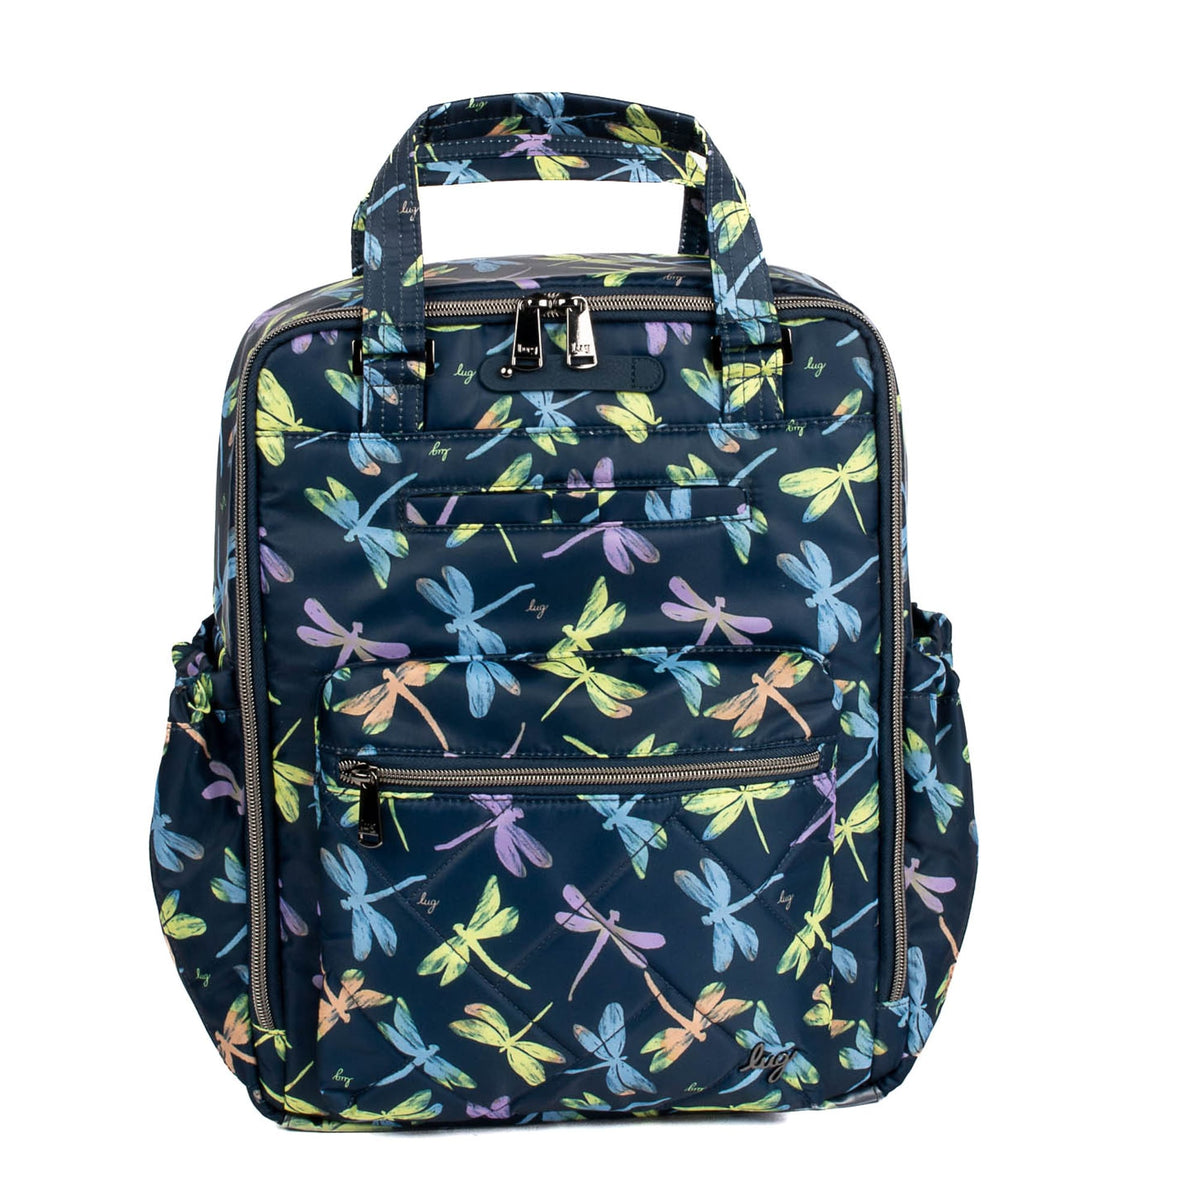 Voyager Backpack